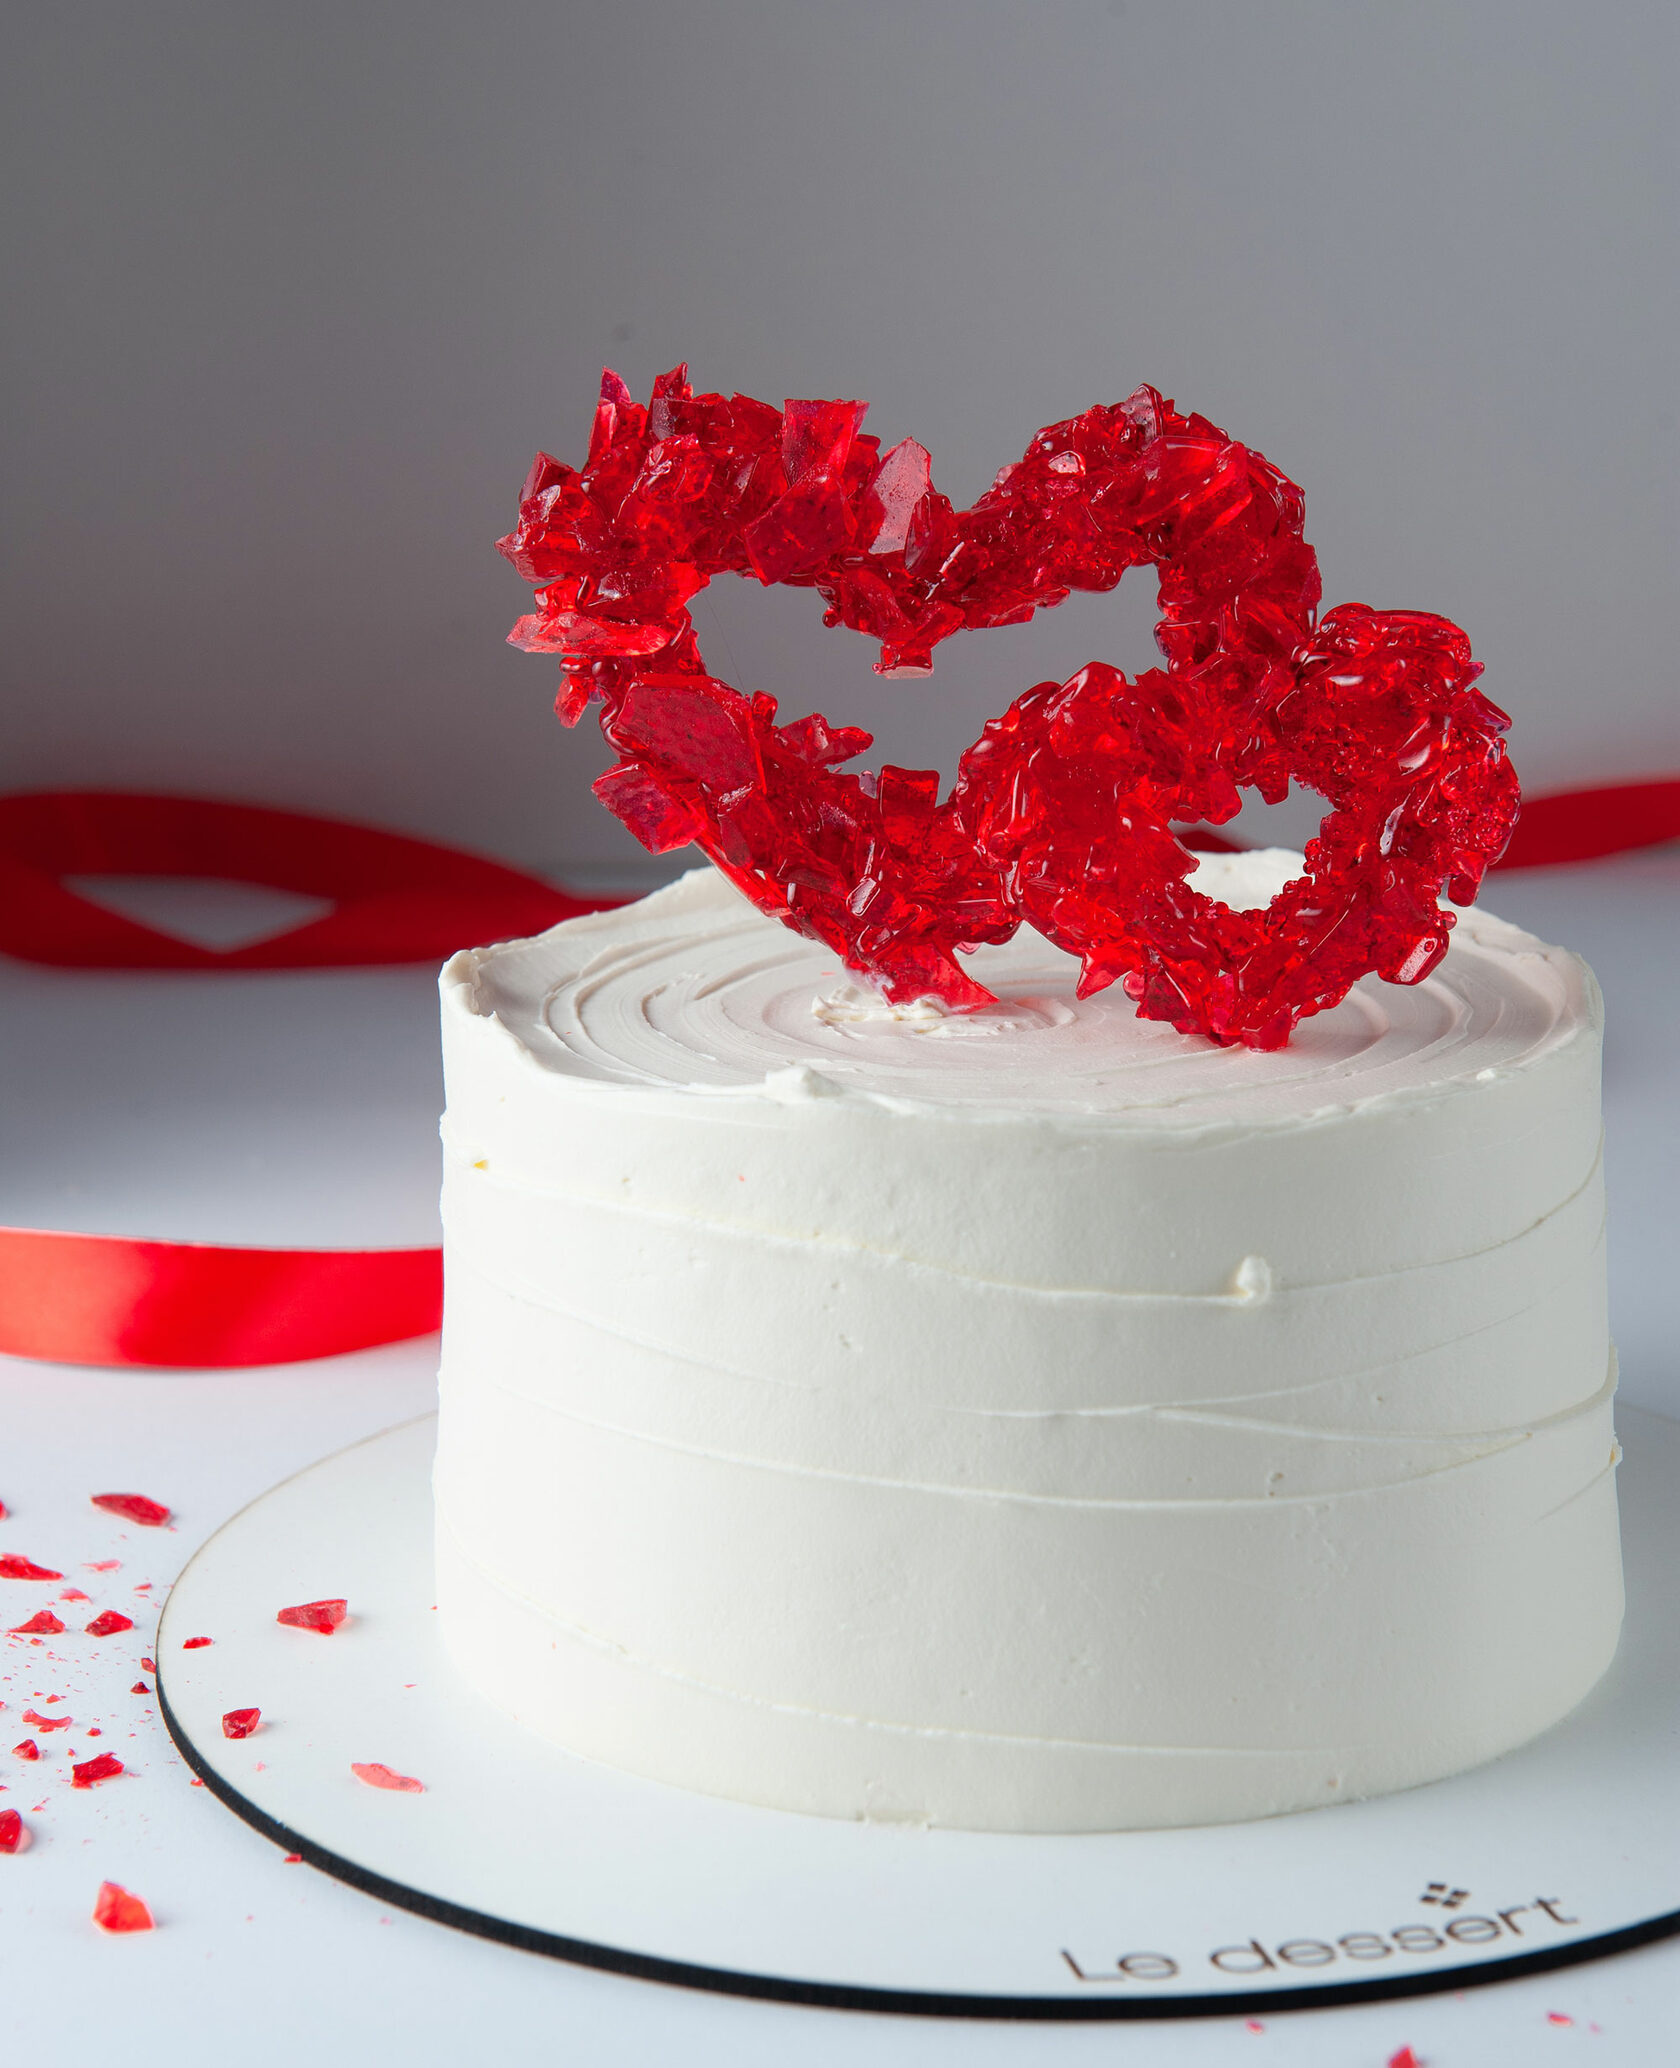 Сердце из изомальта на свадебный торт